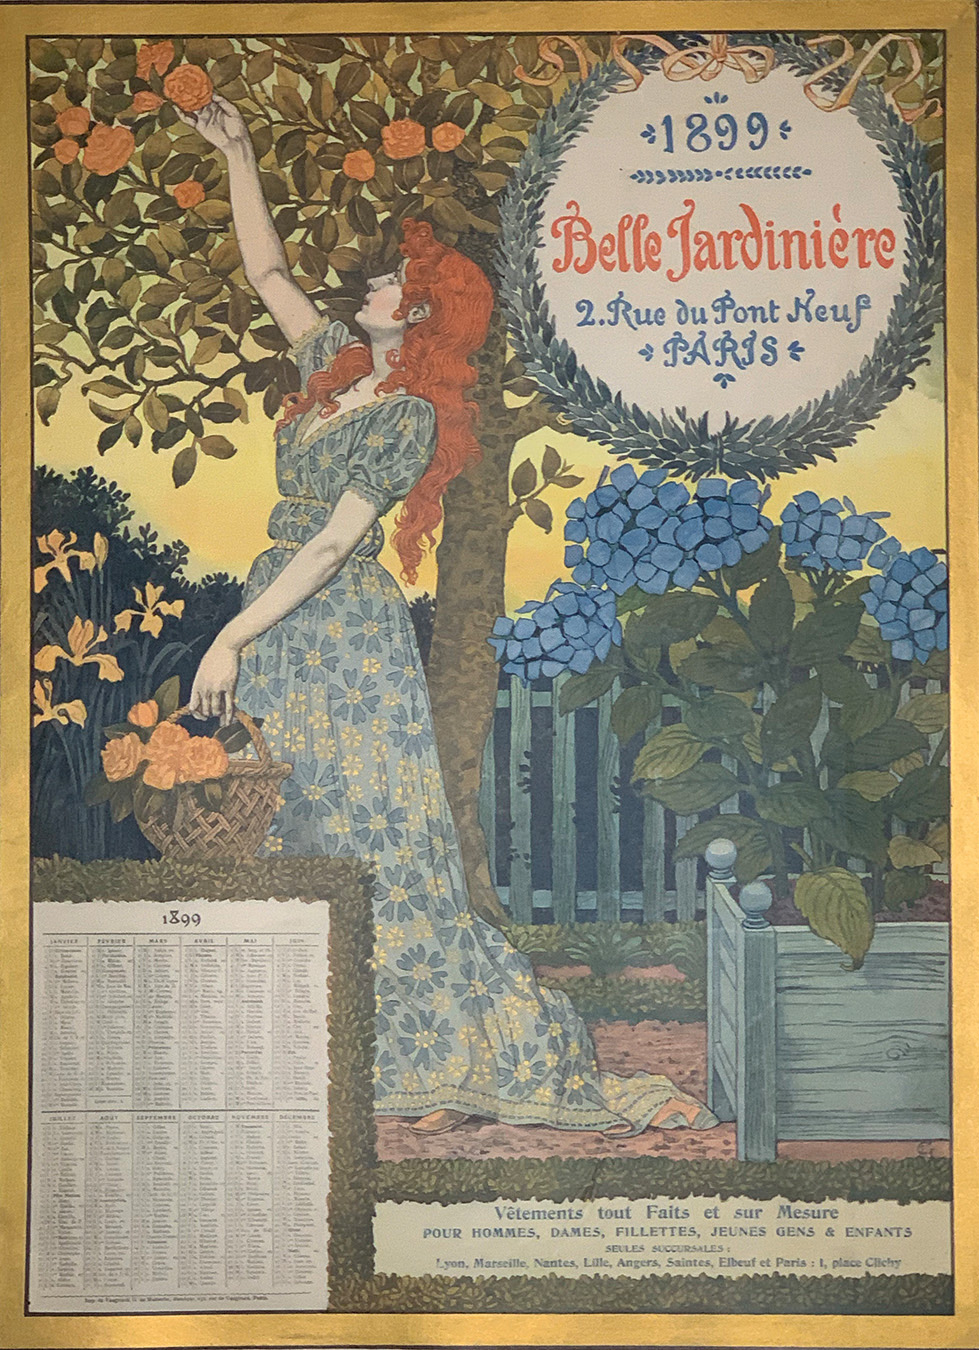 Collection Image: Grasset "La Belle Jardinière"